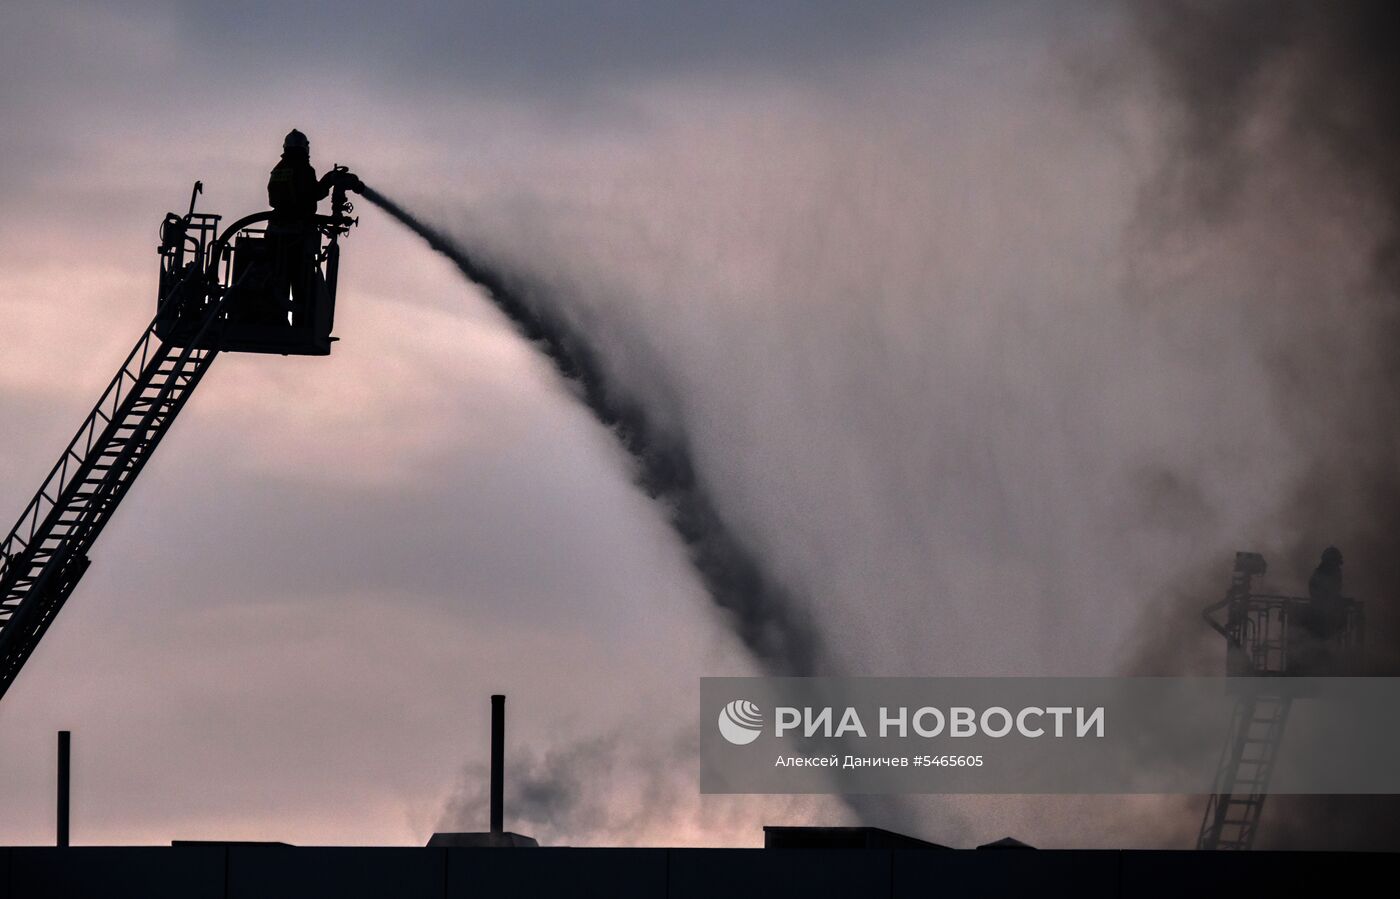 Пожар в автомобильном салоне в Санкт-Петербурге